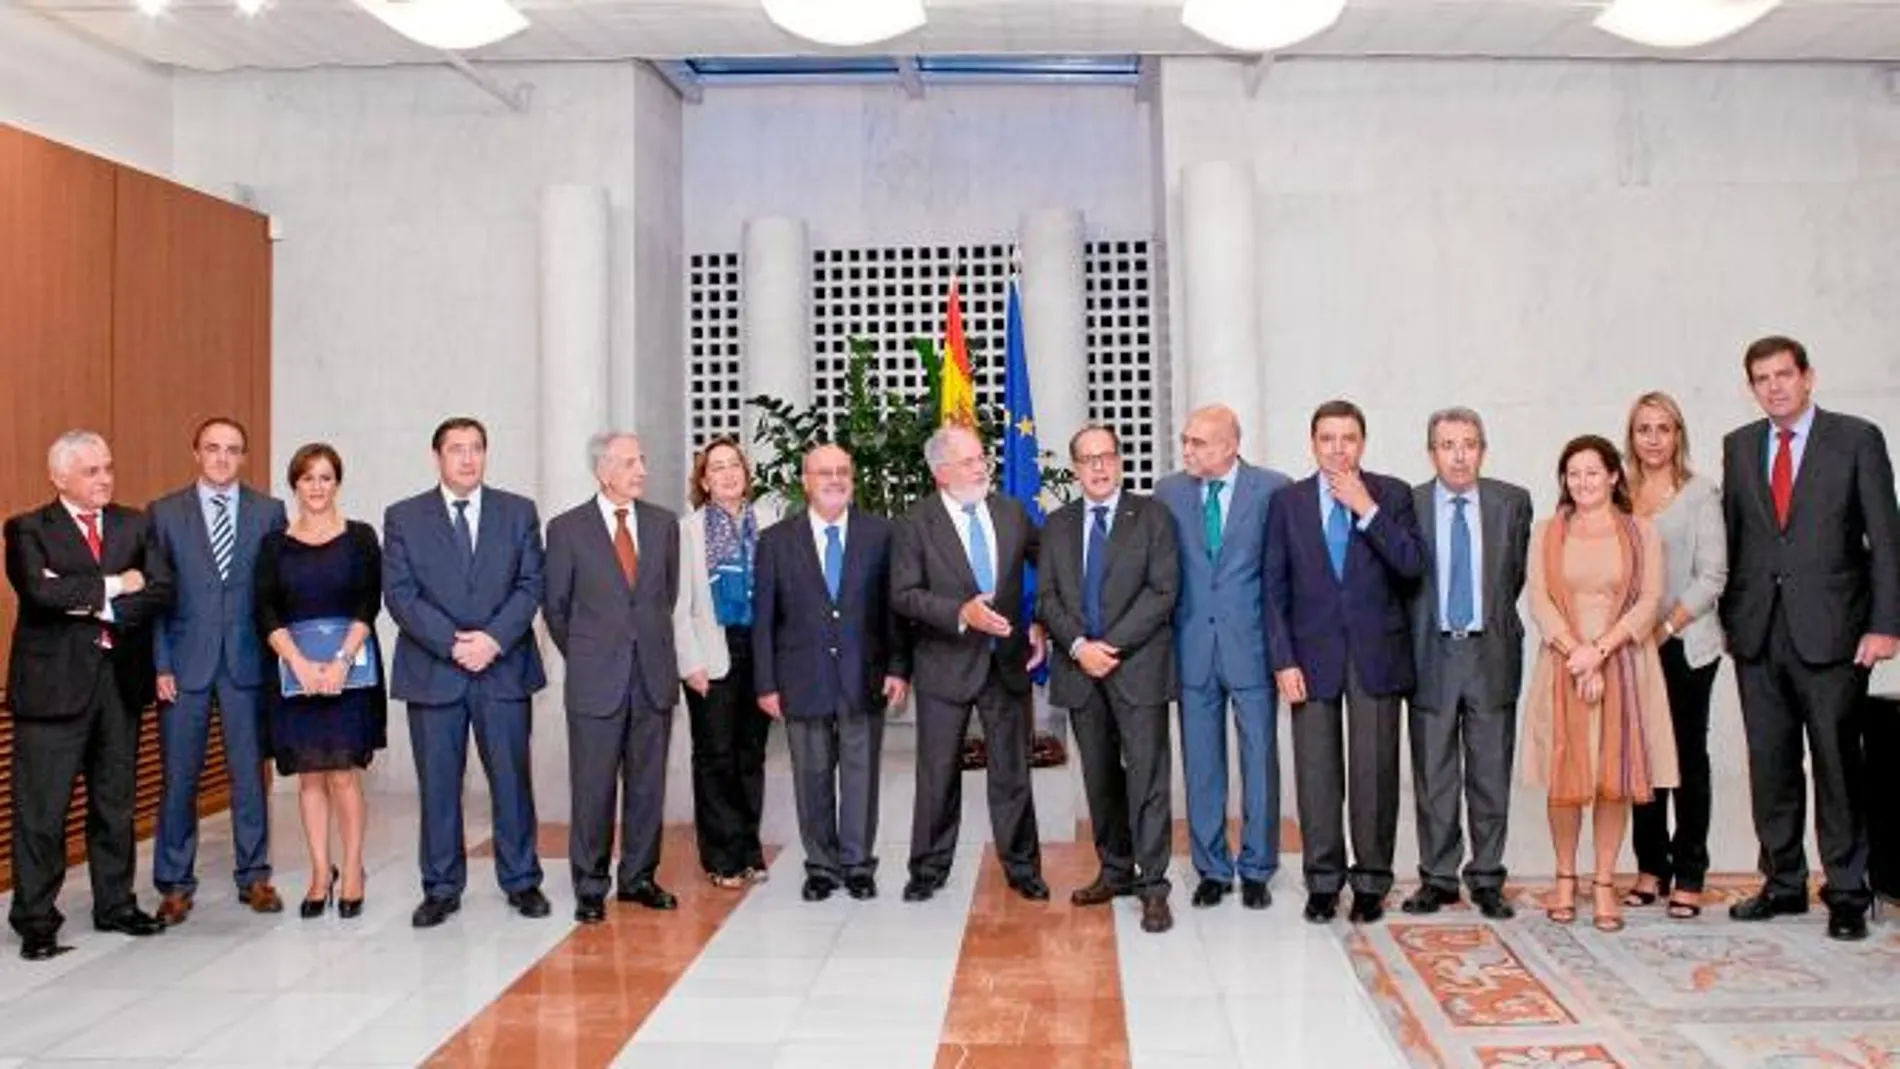 La consejera Silvia Clemente, junto al resto de consejeros, el ministro Arias Cañete y Luis Manuel Capoulas